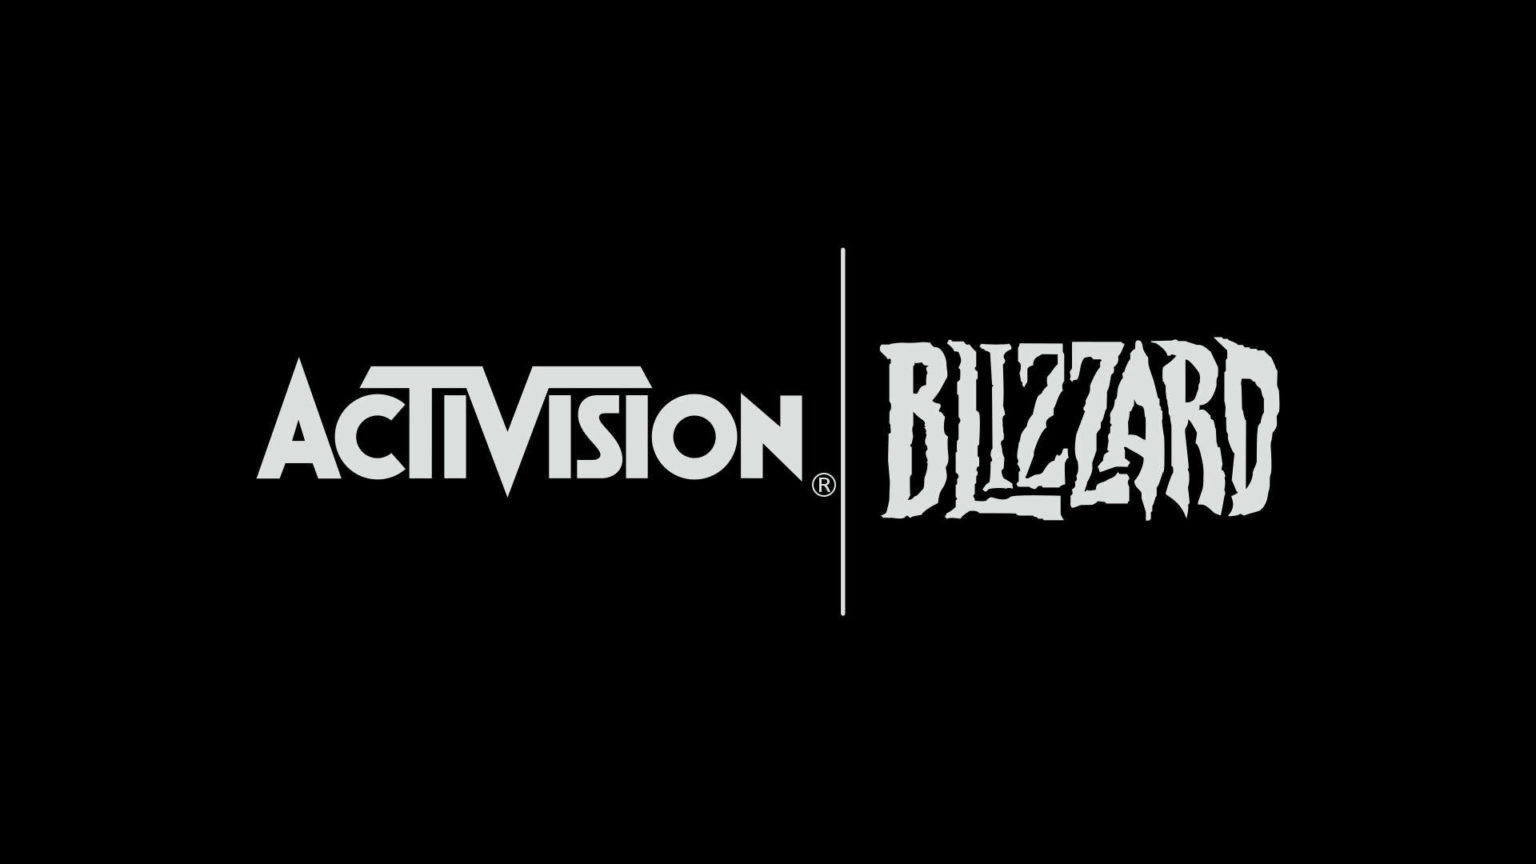 Приобретение Microsoft компании Activision Blizzard будет рассмотрено Федеральной торговой комиссией!